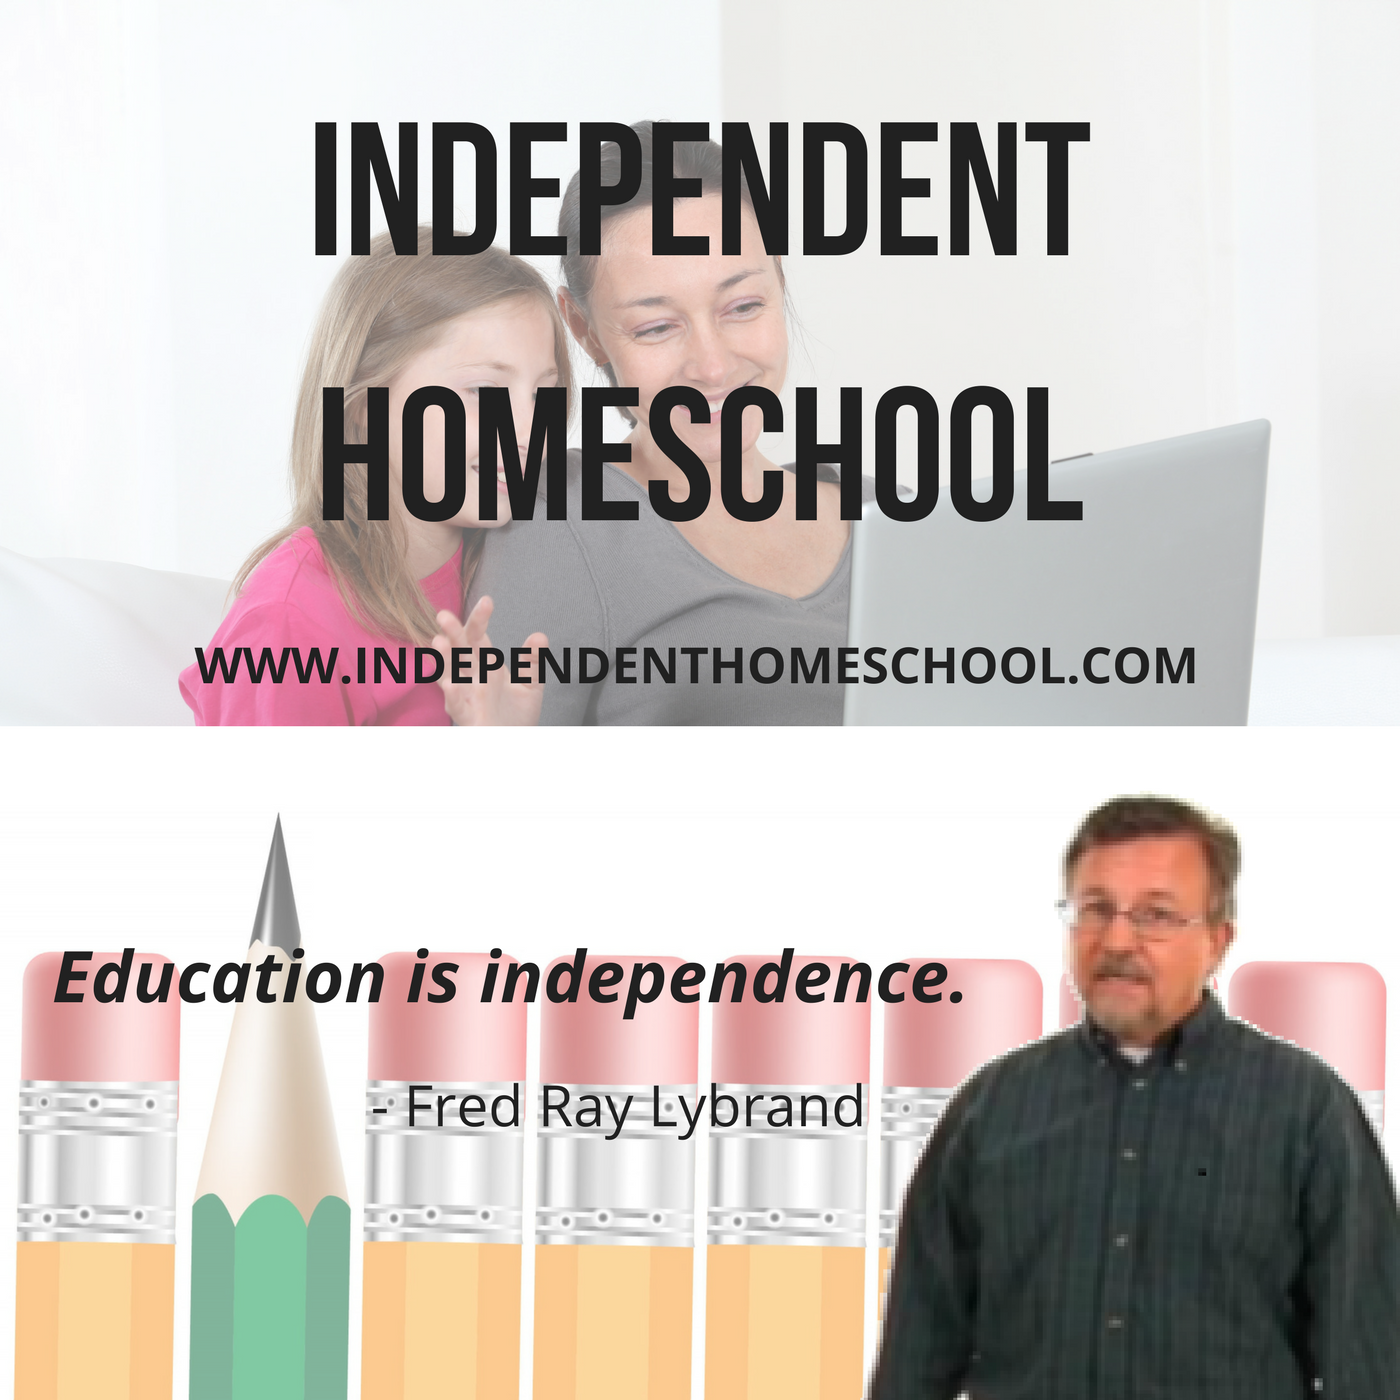 Independent Homeschool